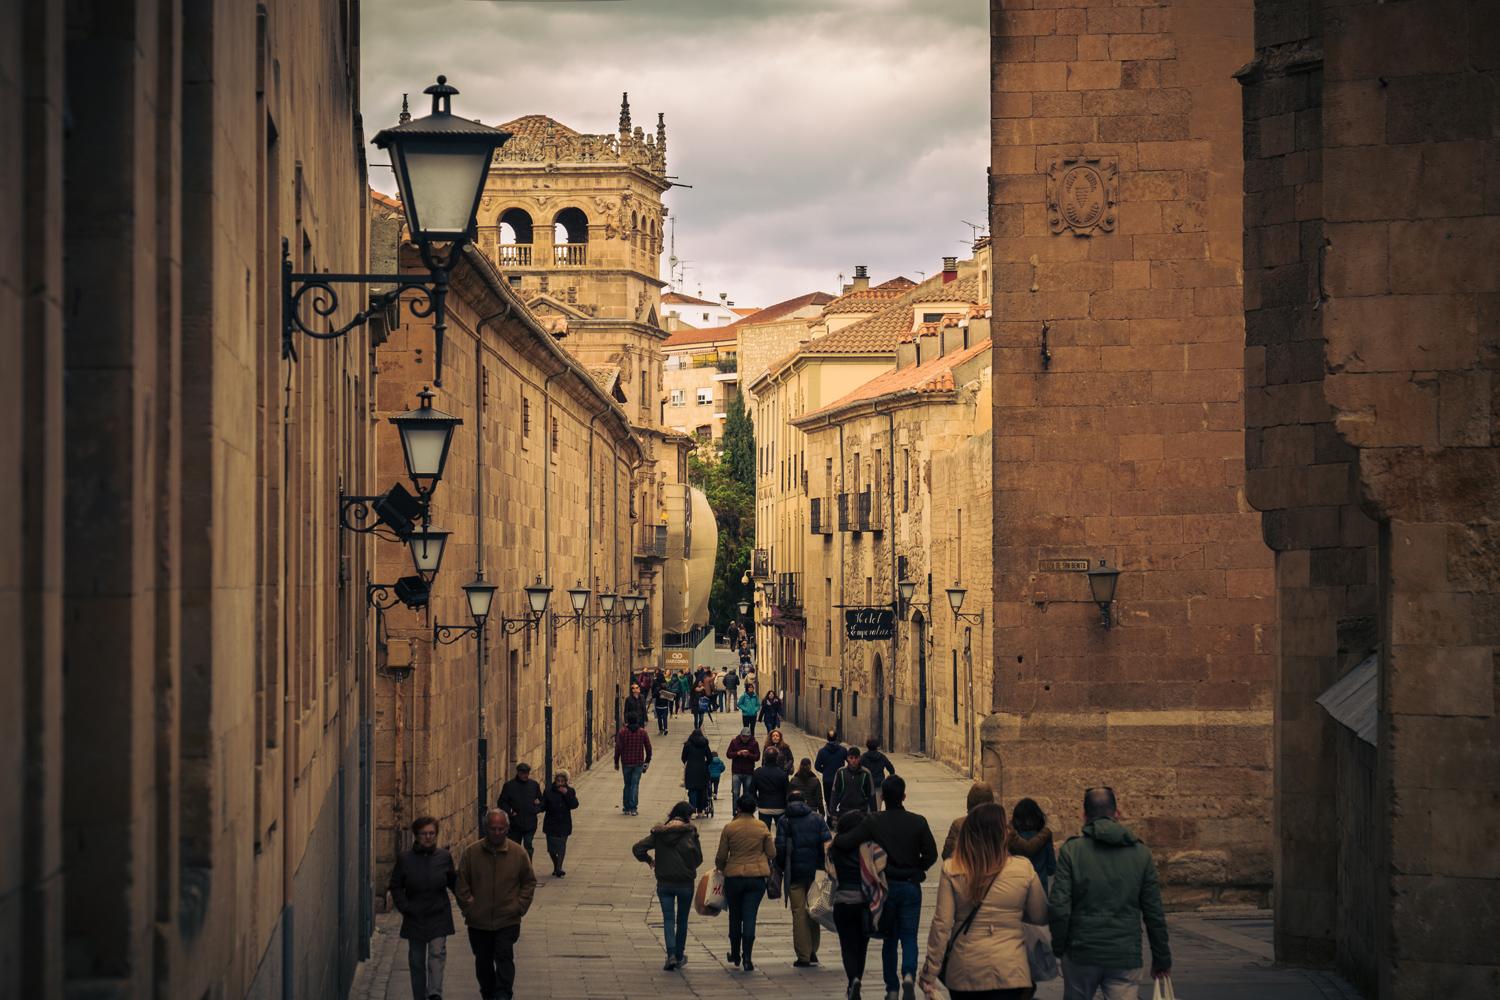 La calle Compañía es una vía peatonal en Salamanca, cuyo nombre proviene de la Compañía de Jesús que en el siglo XVII se estableció en esta calle.